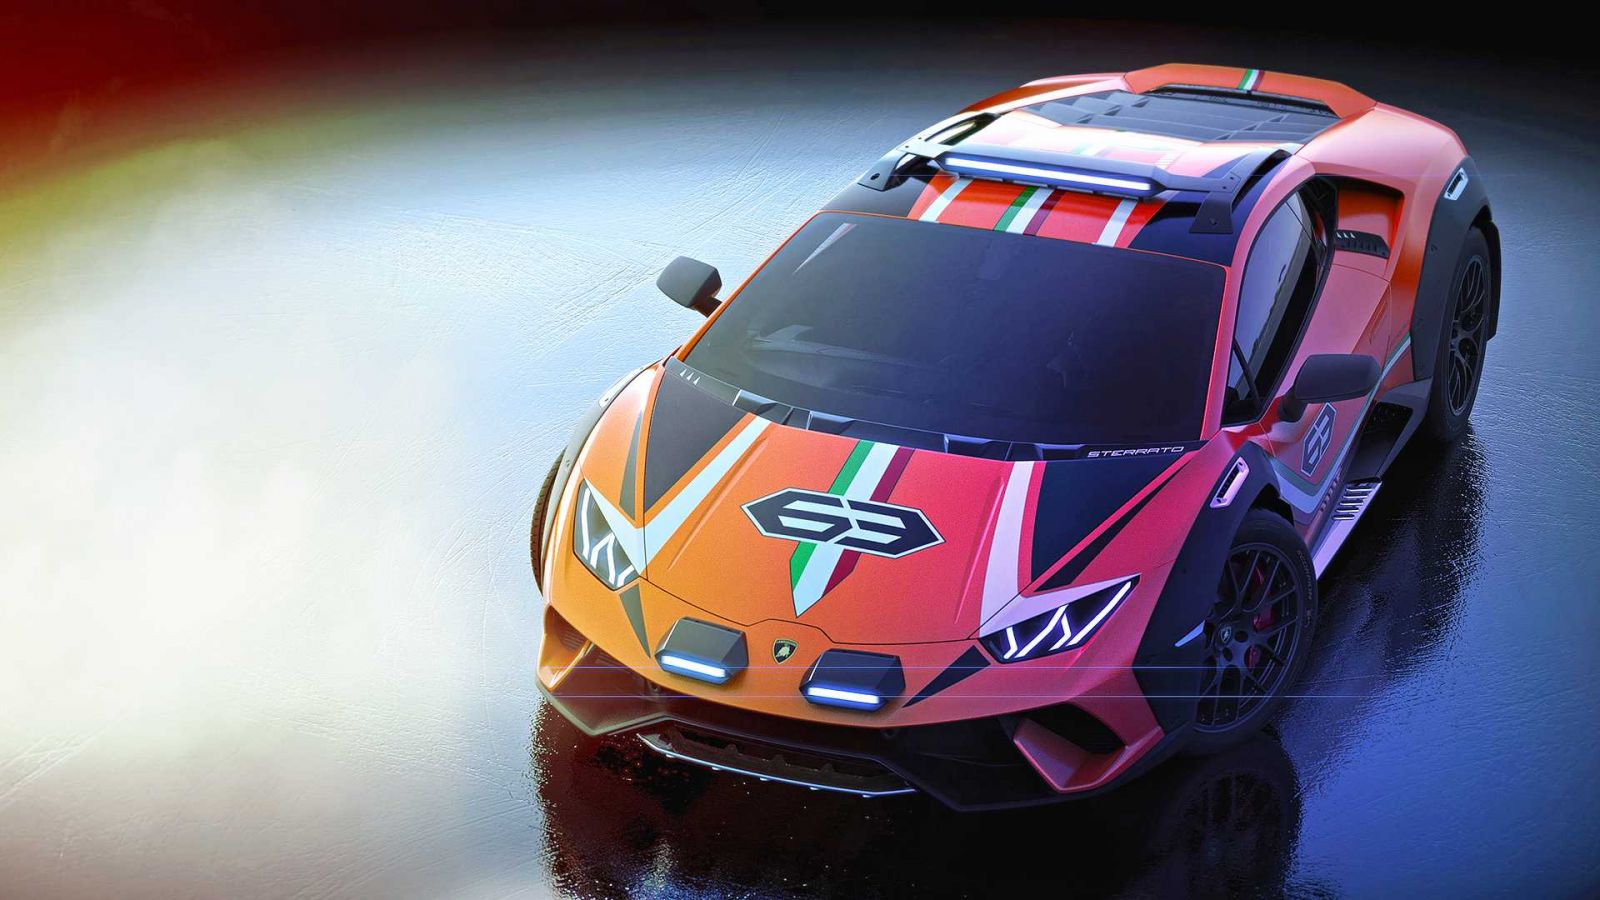 Lamborghini Huracan Sterrato concept